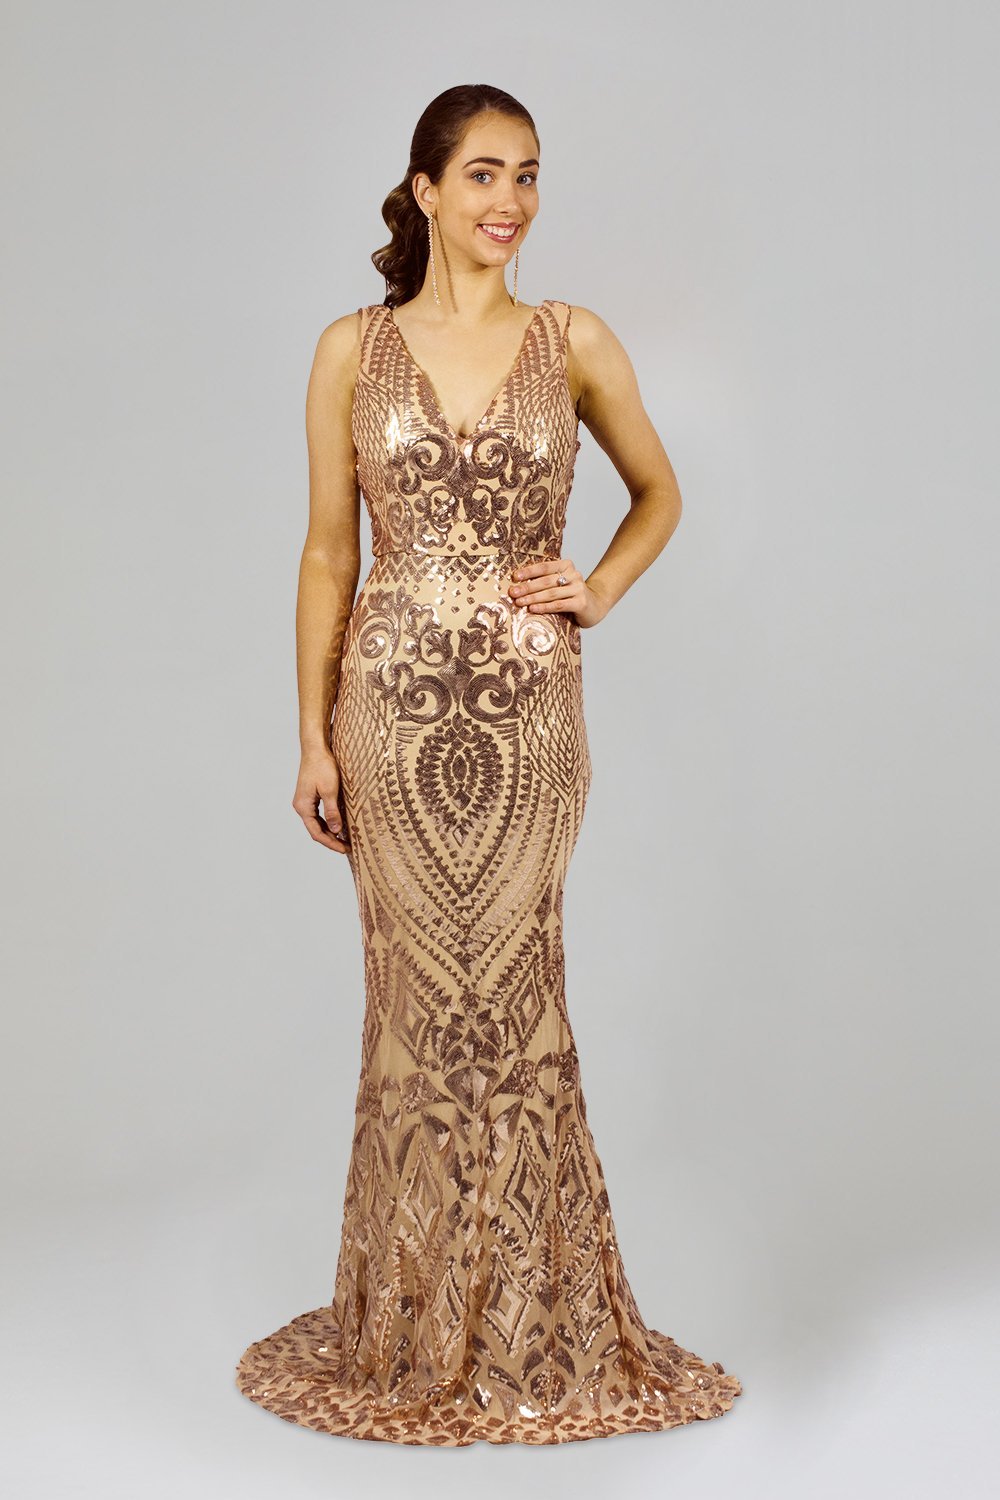 Patterned Rose Gold Sequin Formal Dress ...